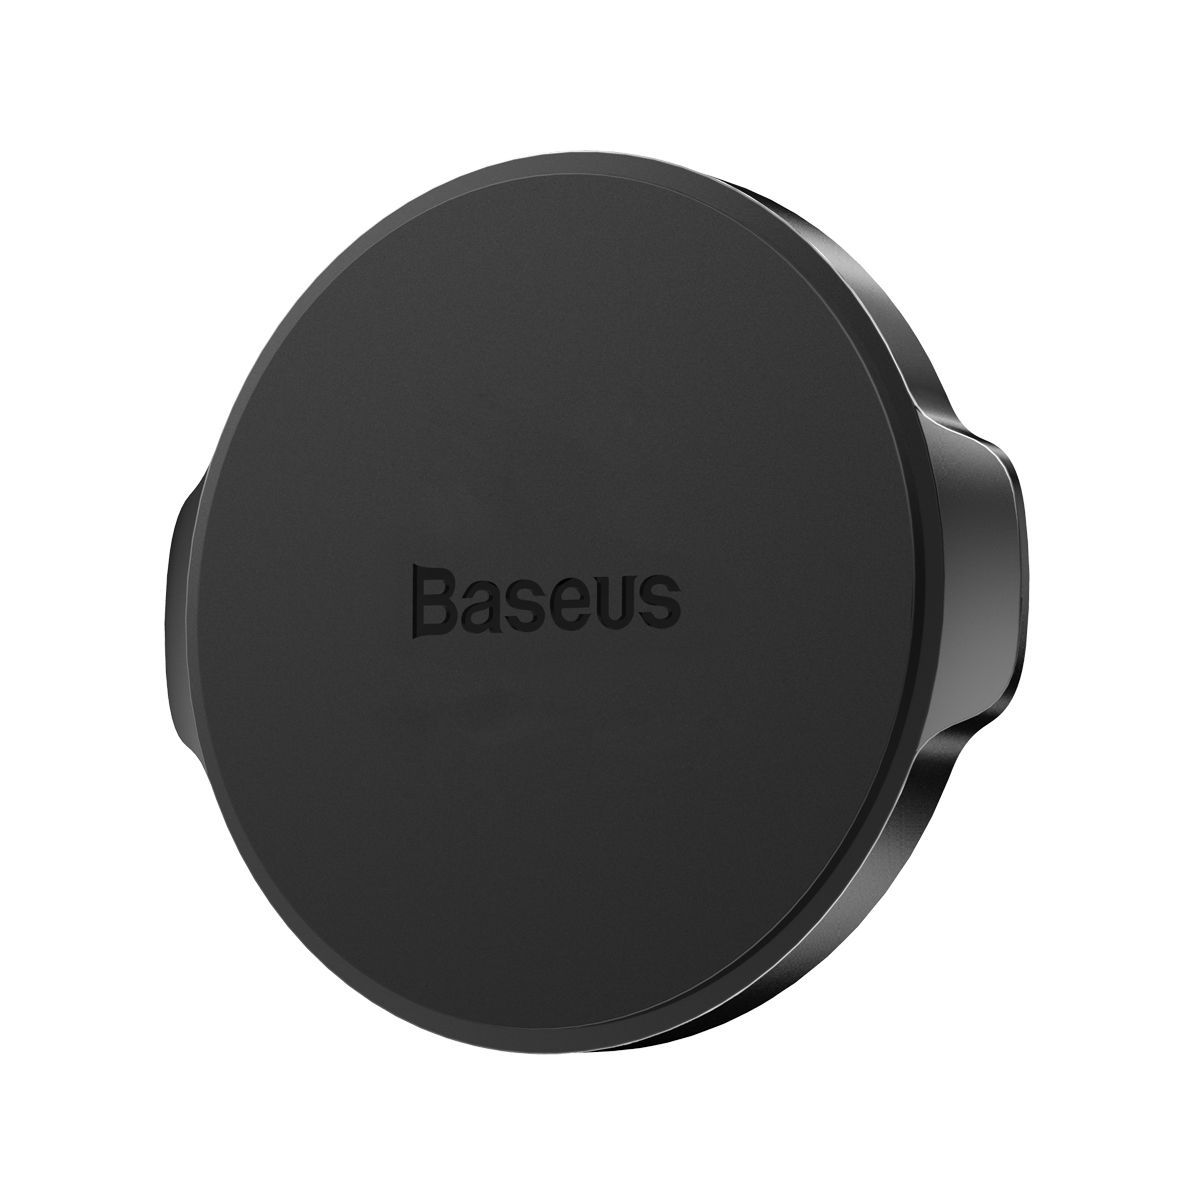  Магнитный автомобильный держатель для телефона Baseus Small Ears Series, цвет -  чёрный